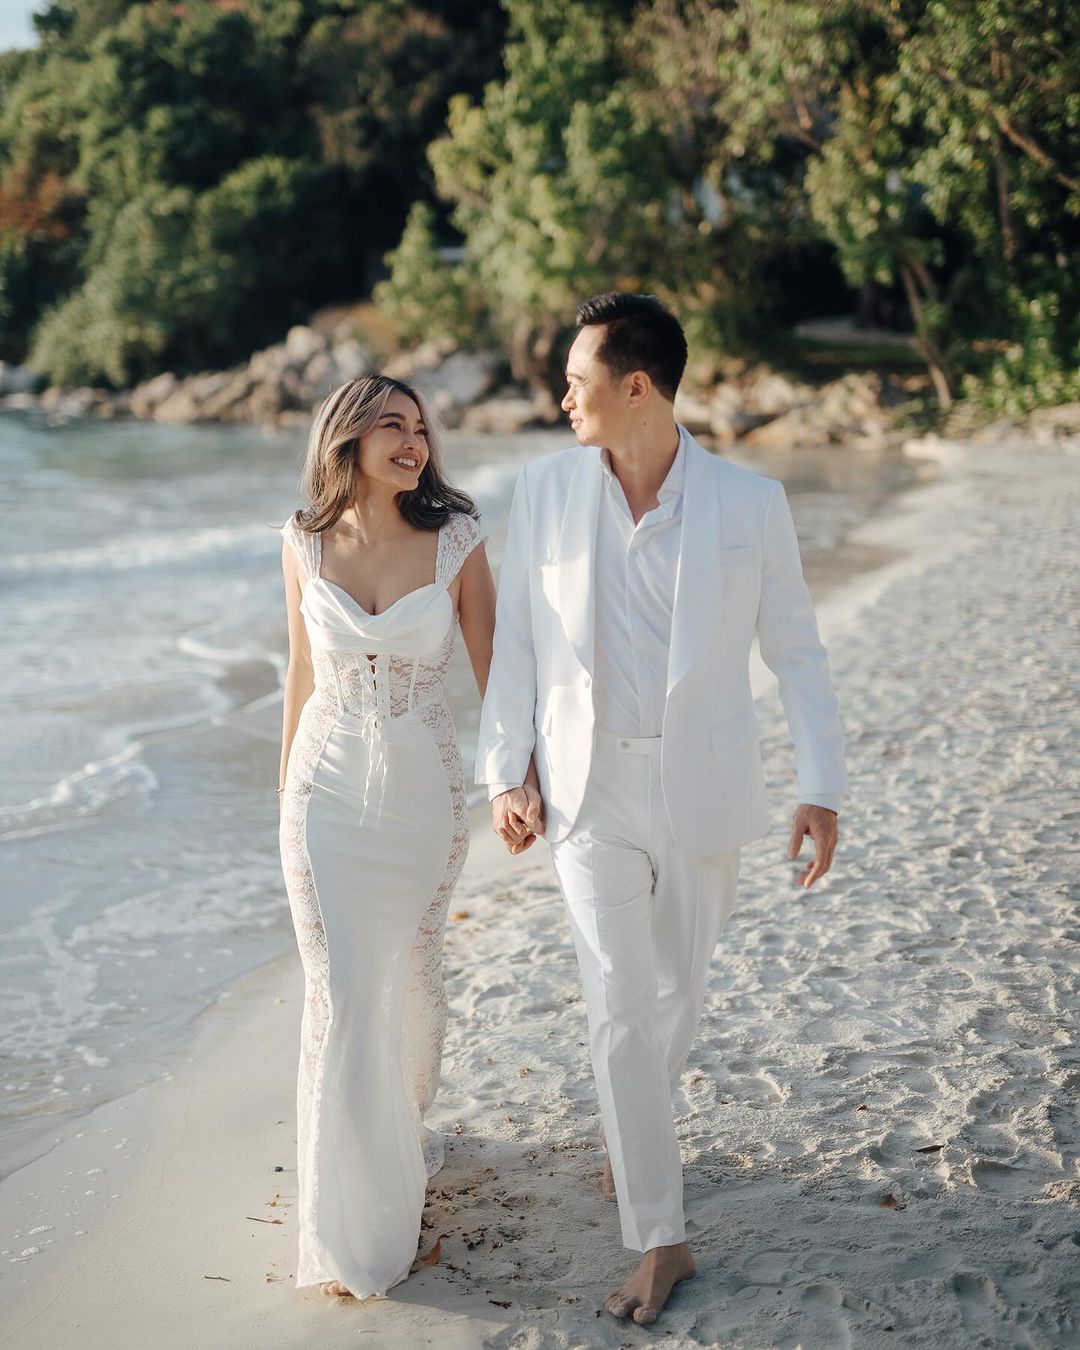 คุณชุ ชุลีพร & คุณไก่ การ์ดแต่งงาน การ์ดแต่งงานดารา งานแต่ง